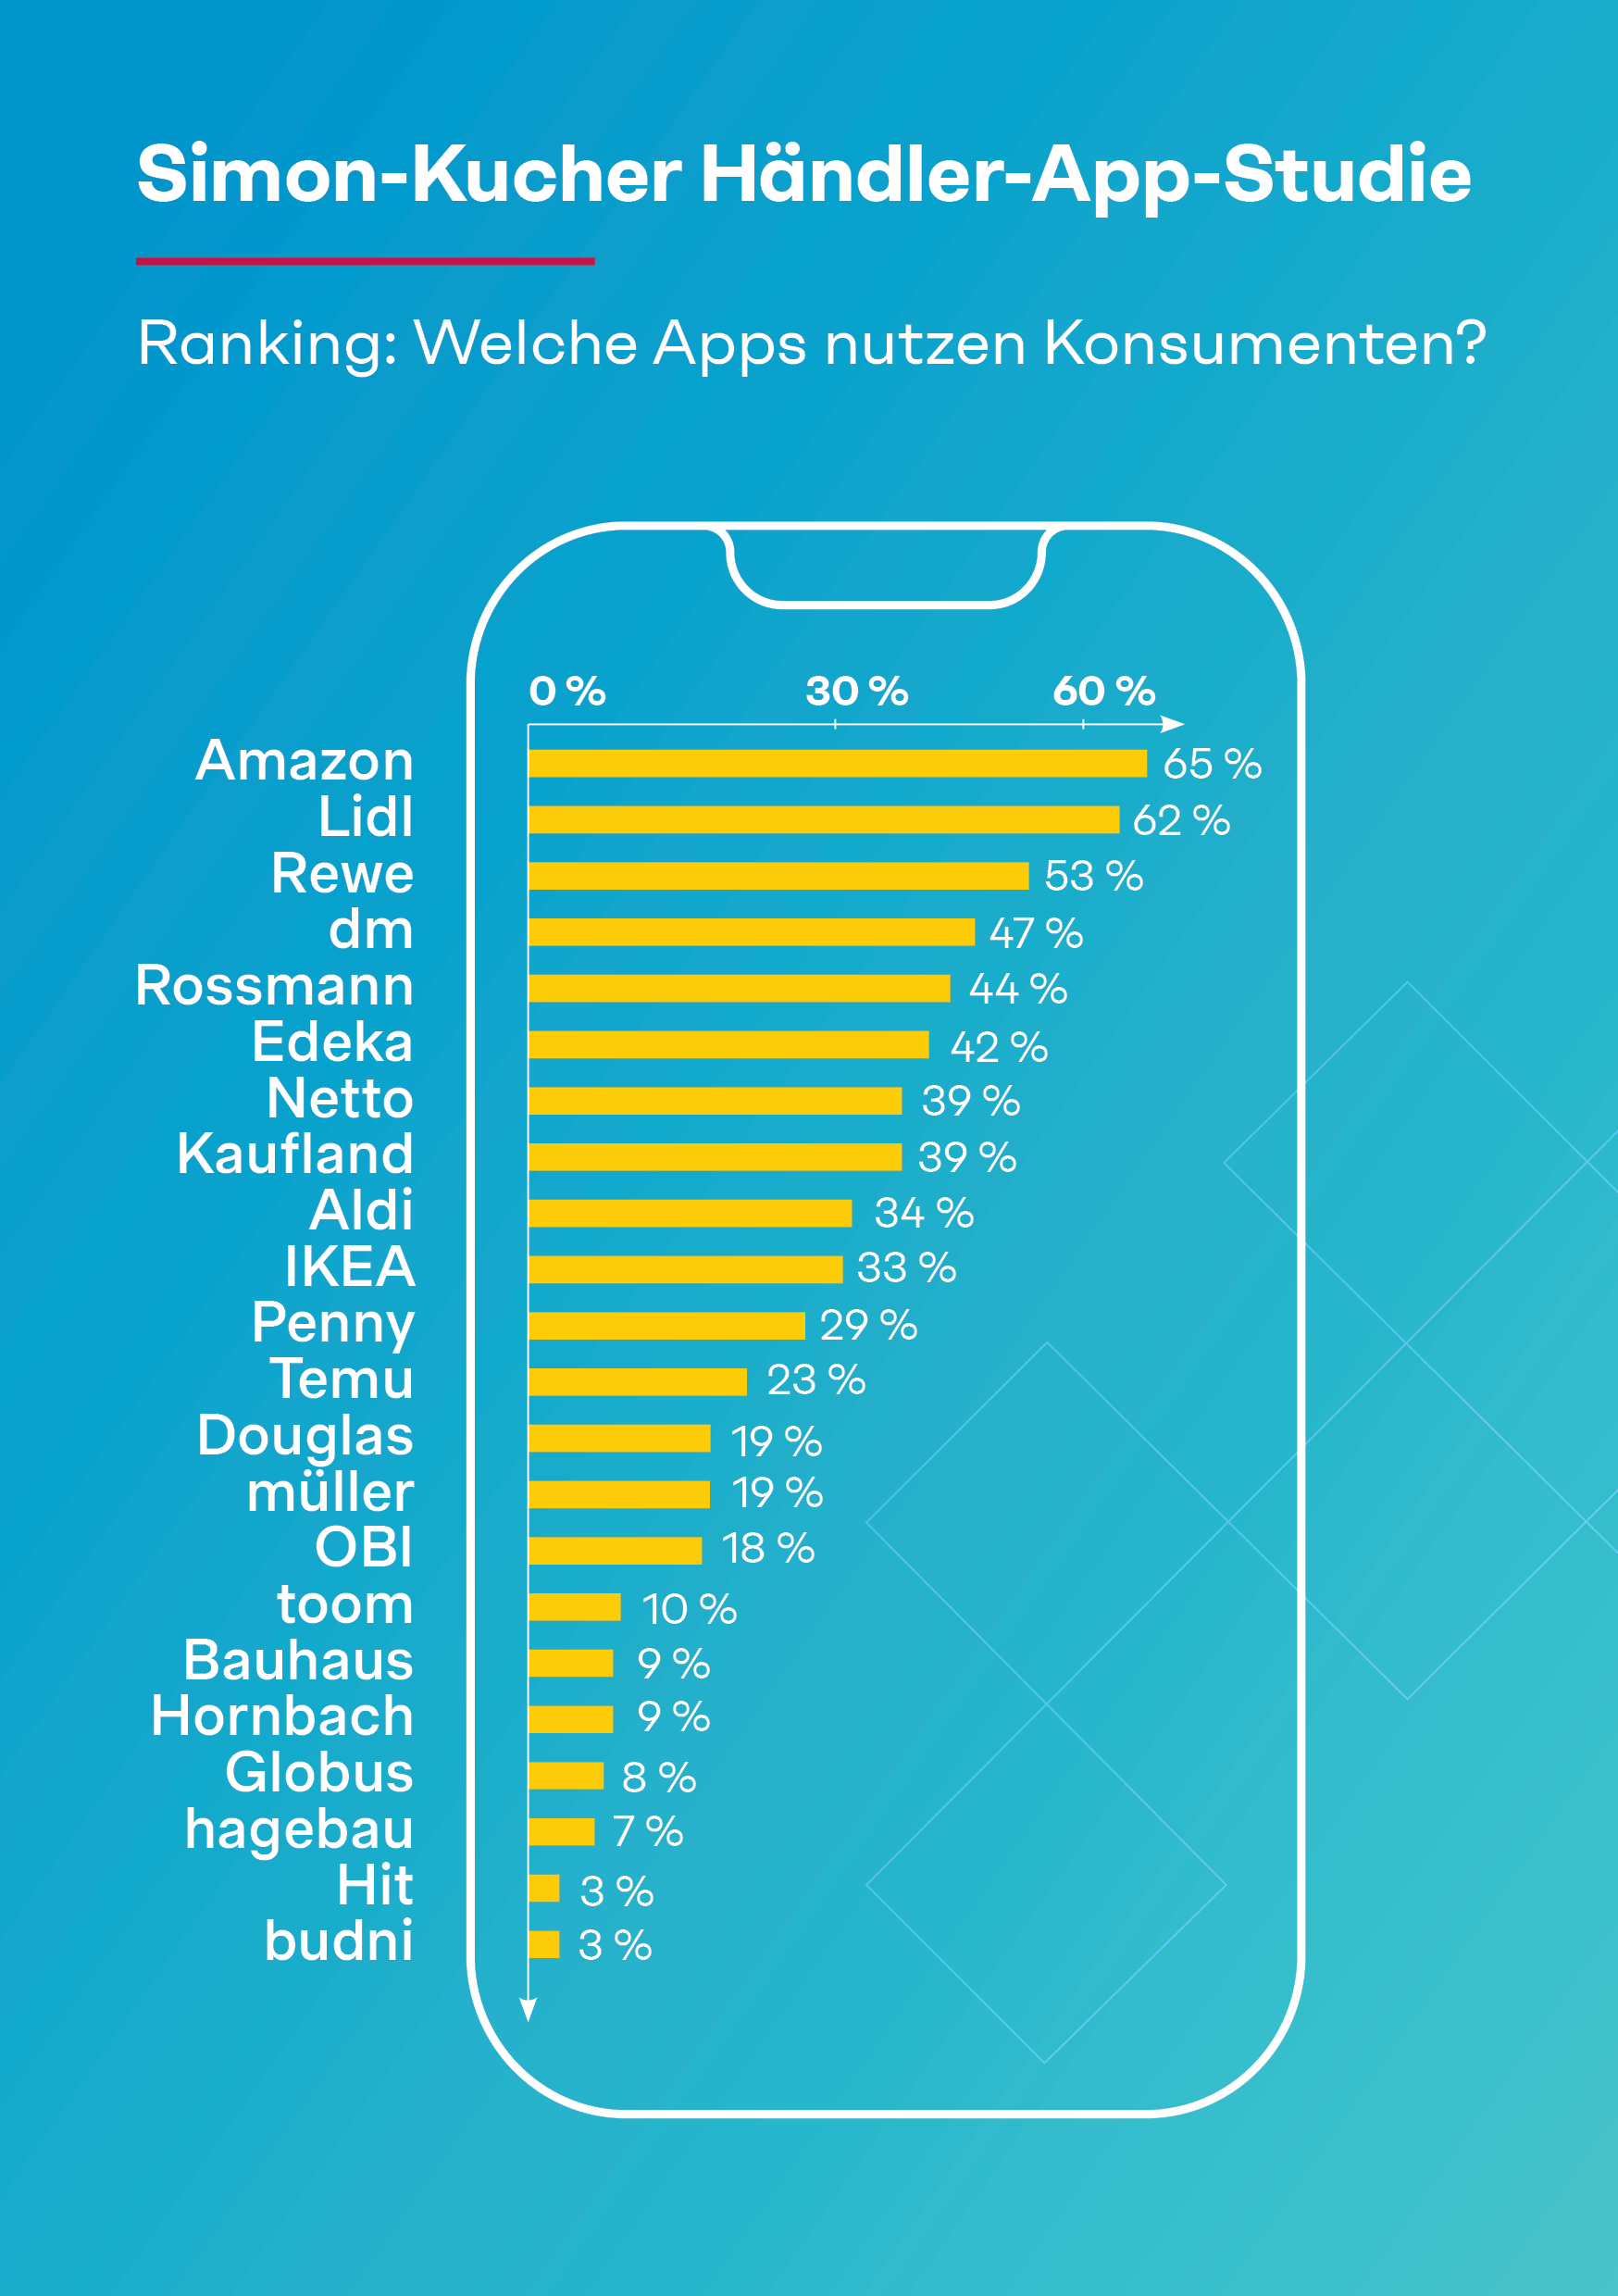 Simon-Kucher Händler-App-Studie: Ranking - Welche Apps nutzen Konsumenten?